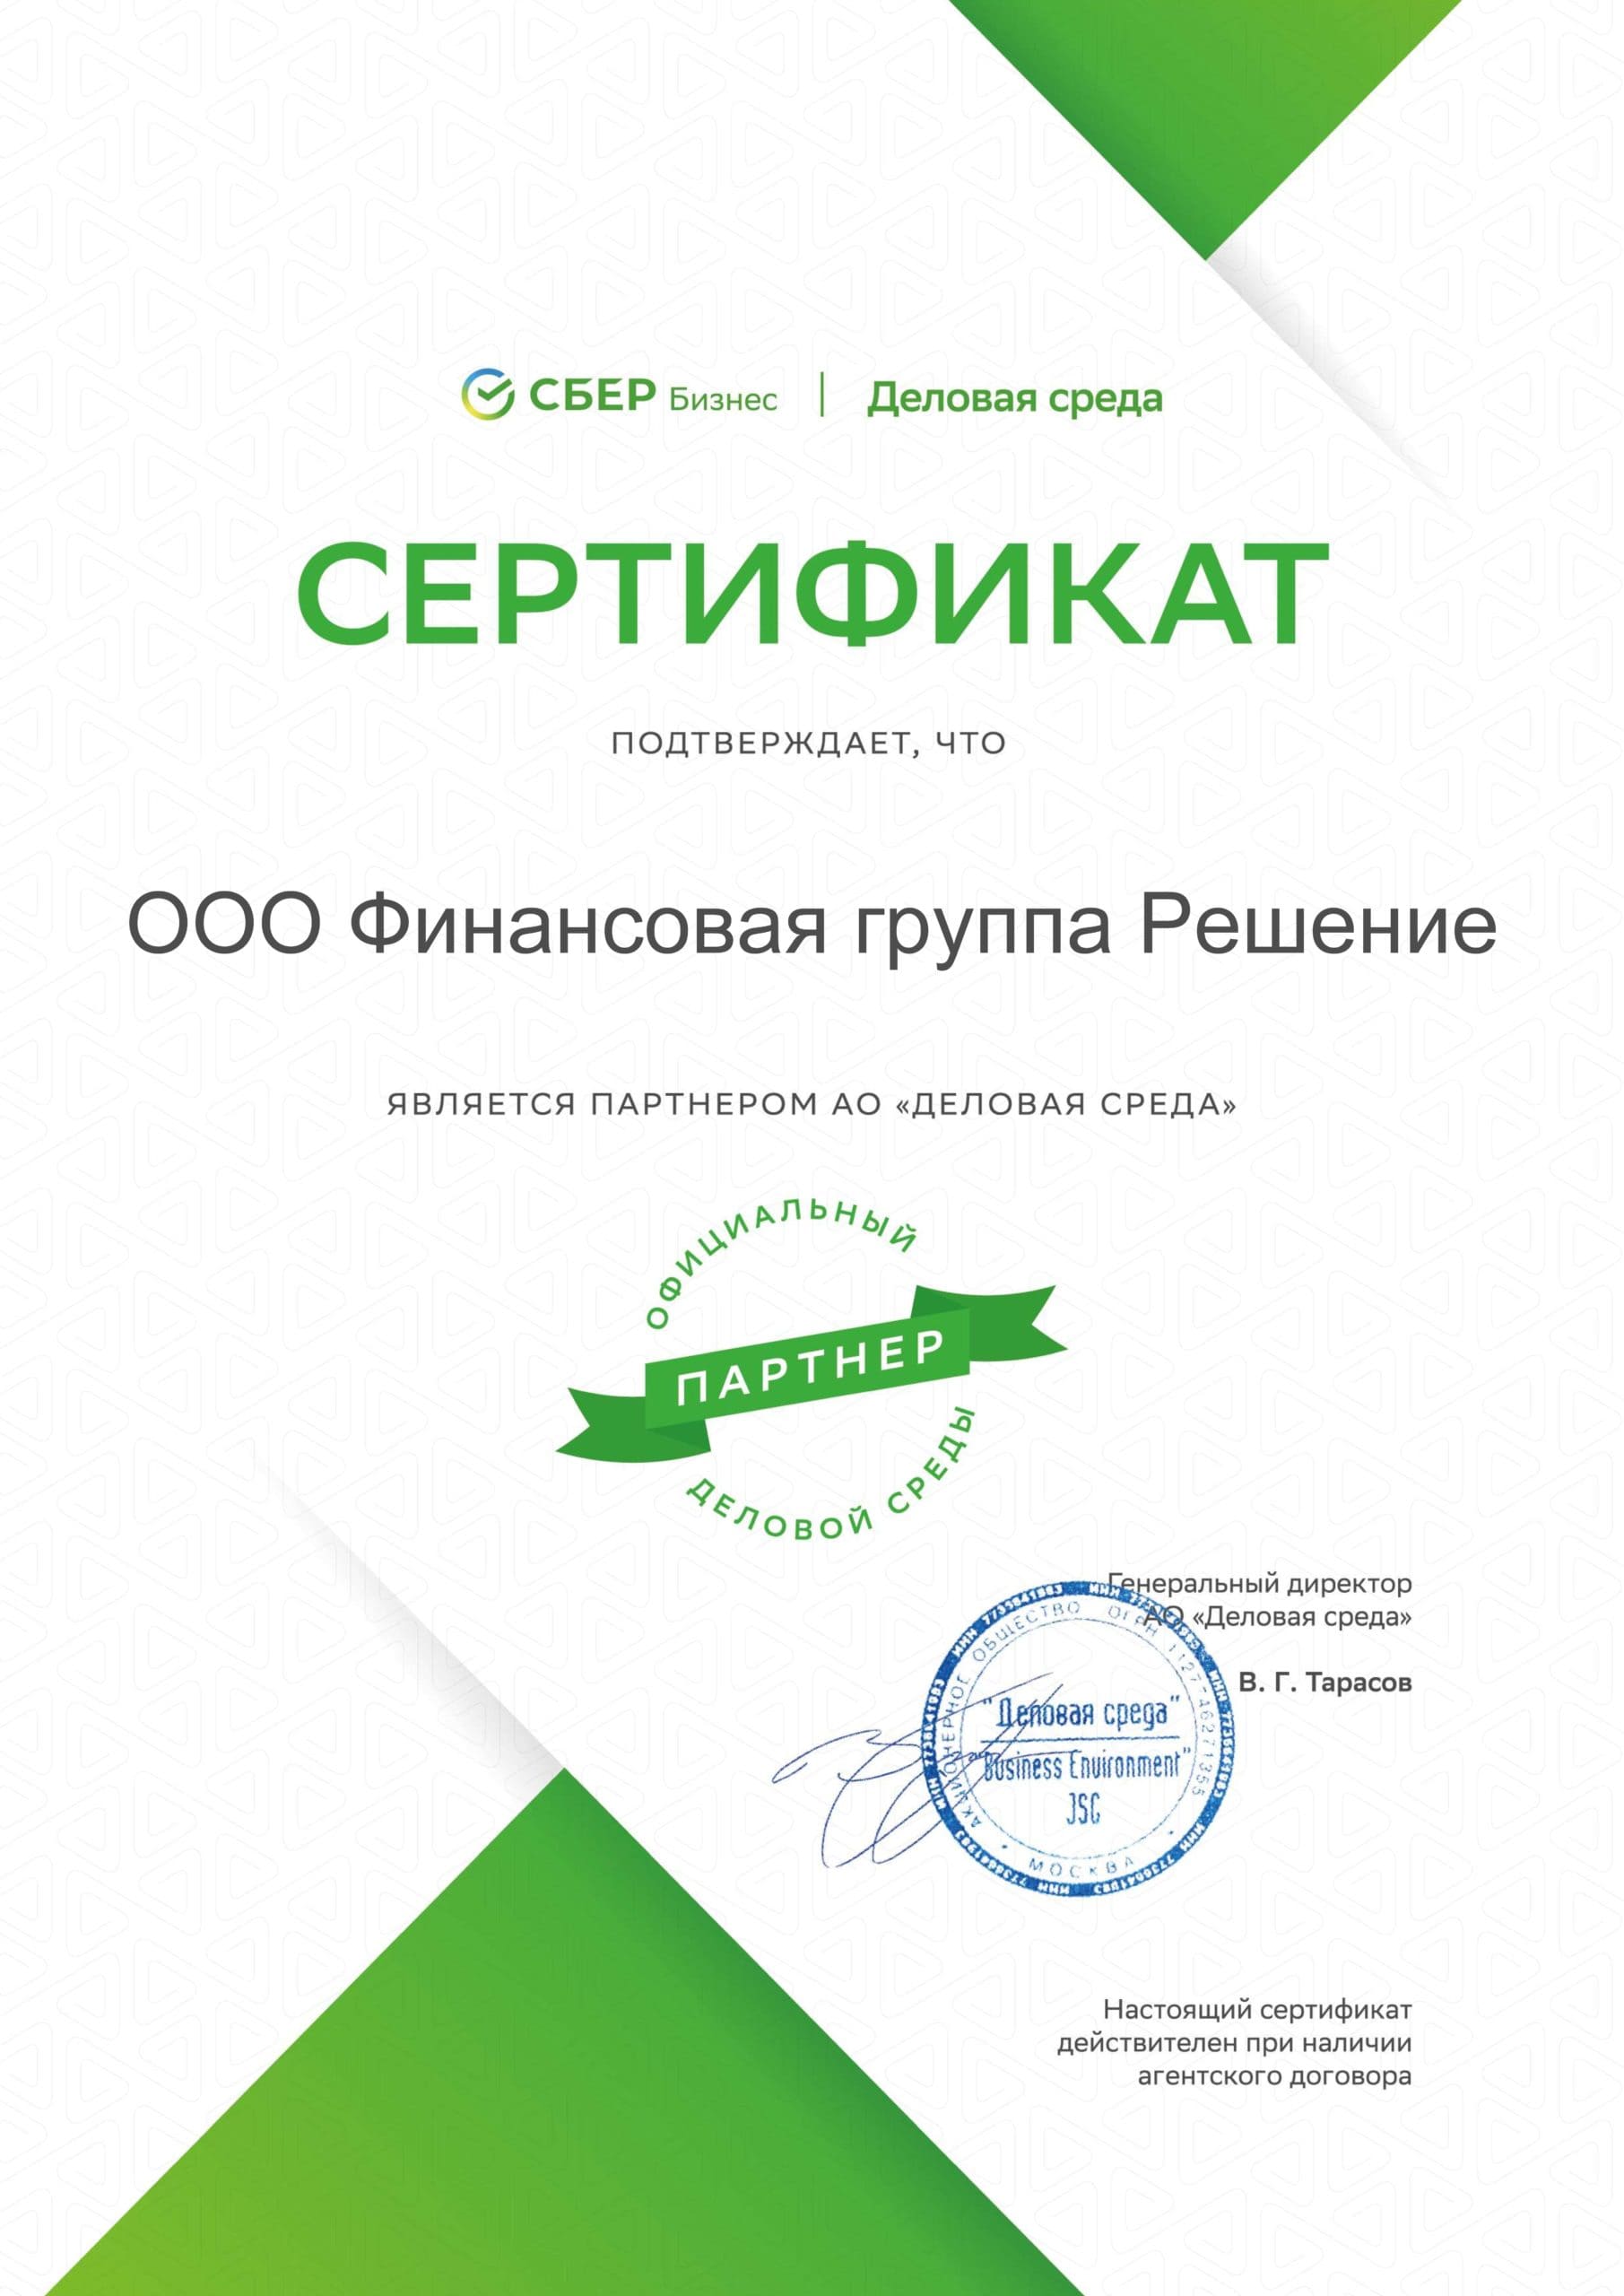 Сертификаты банков-партнёров